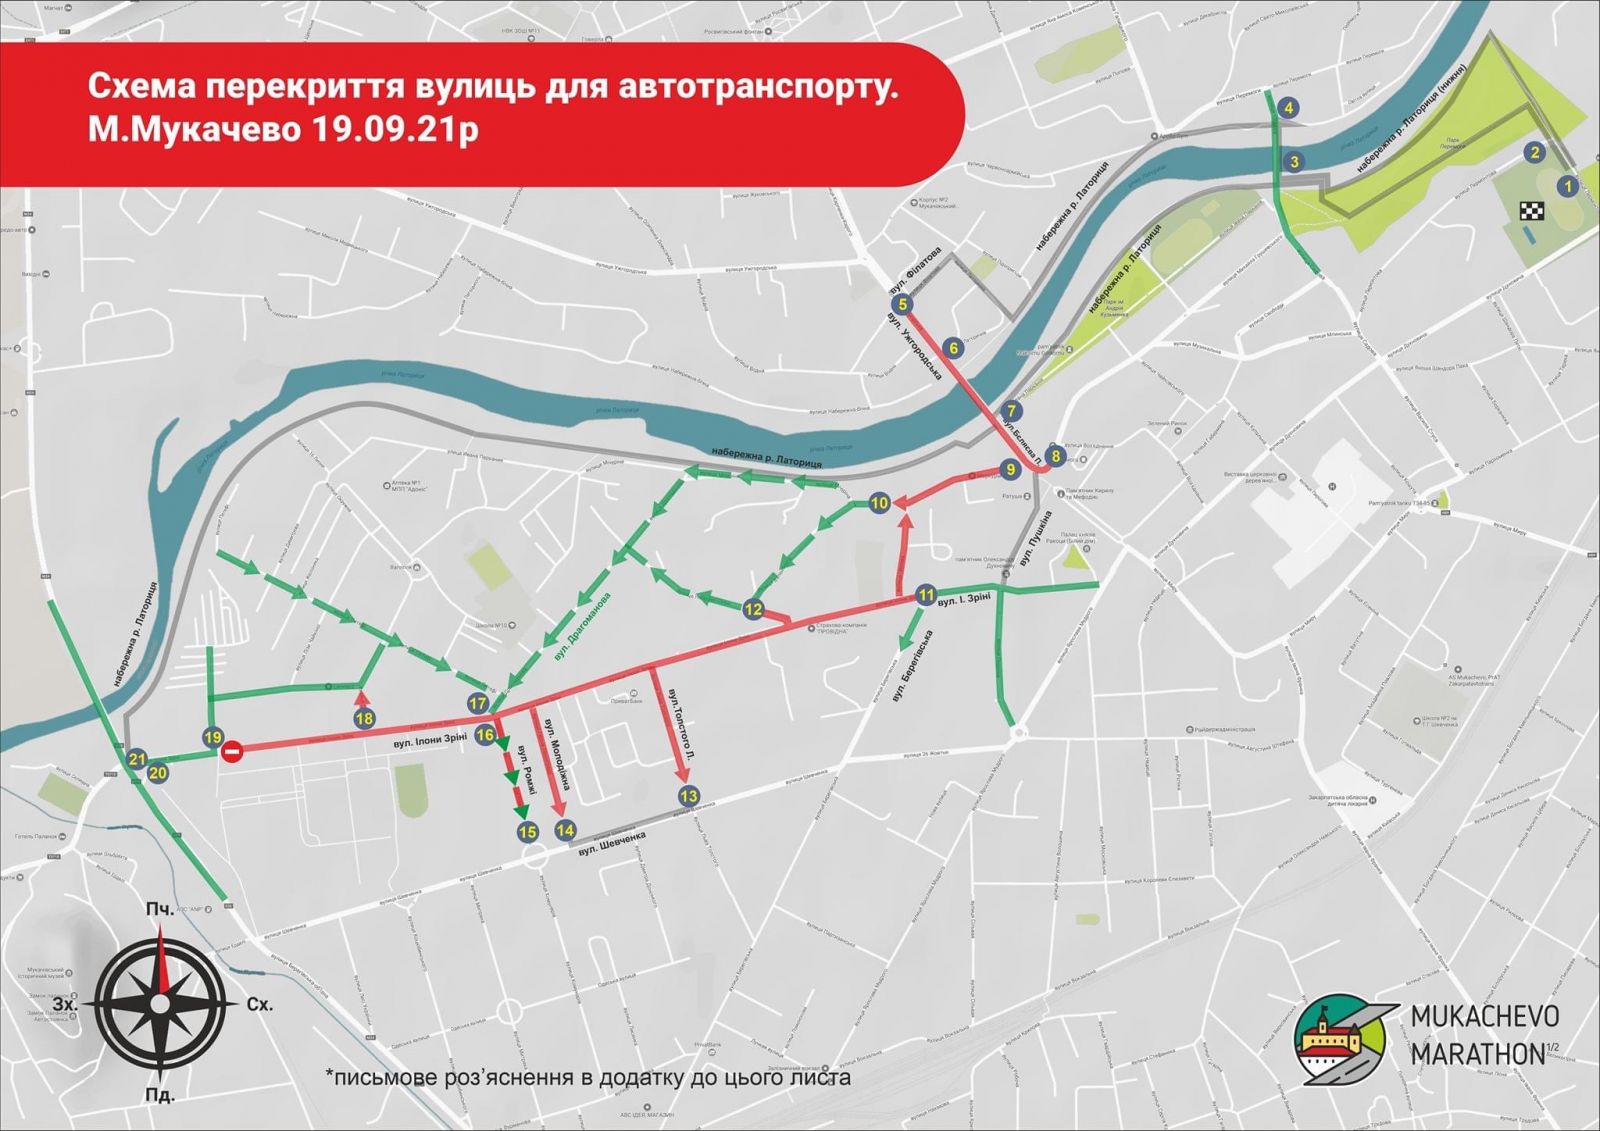 У зв’язку з масштабною спортивною подією в Мукачеві буде перекрито рух транспортних засобів низкою вулиць міста.